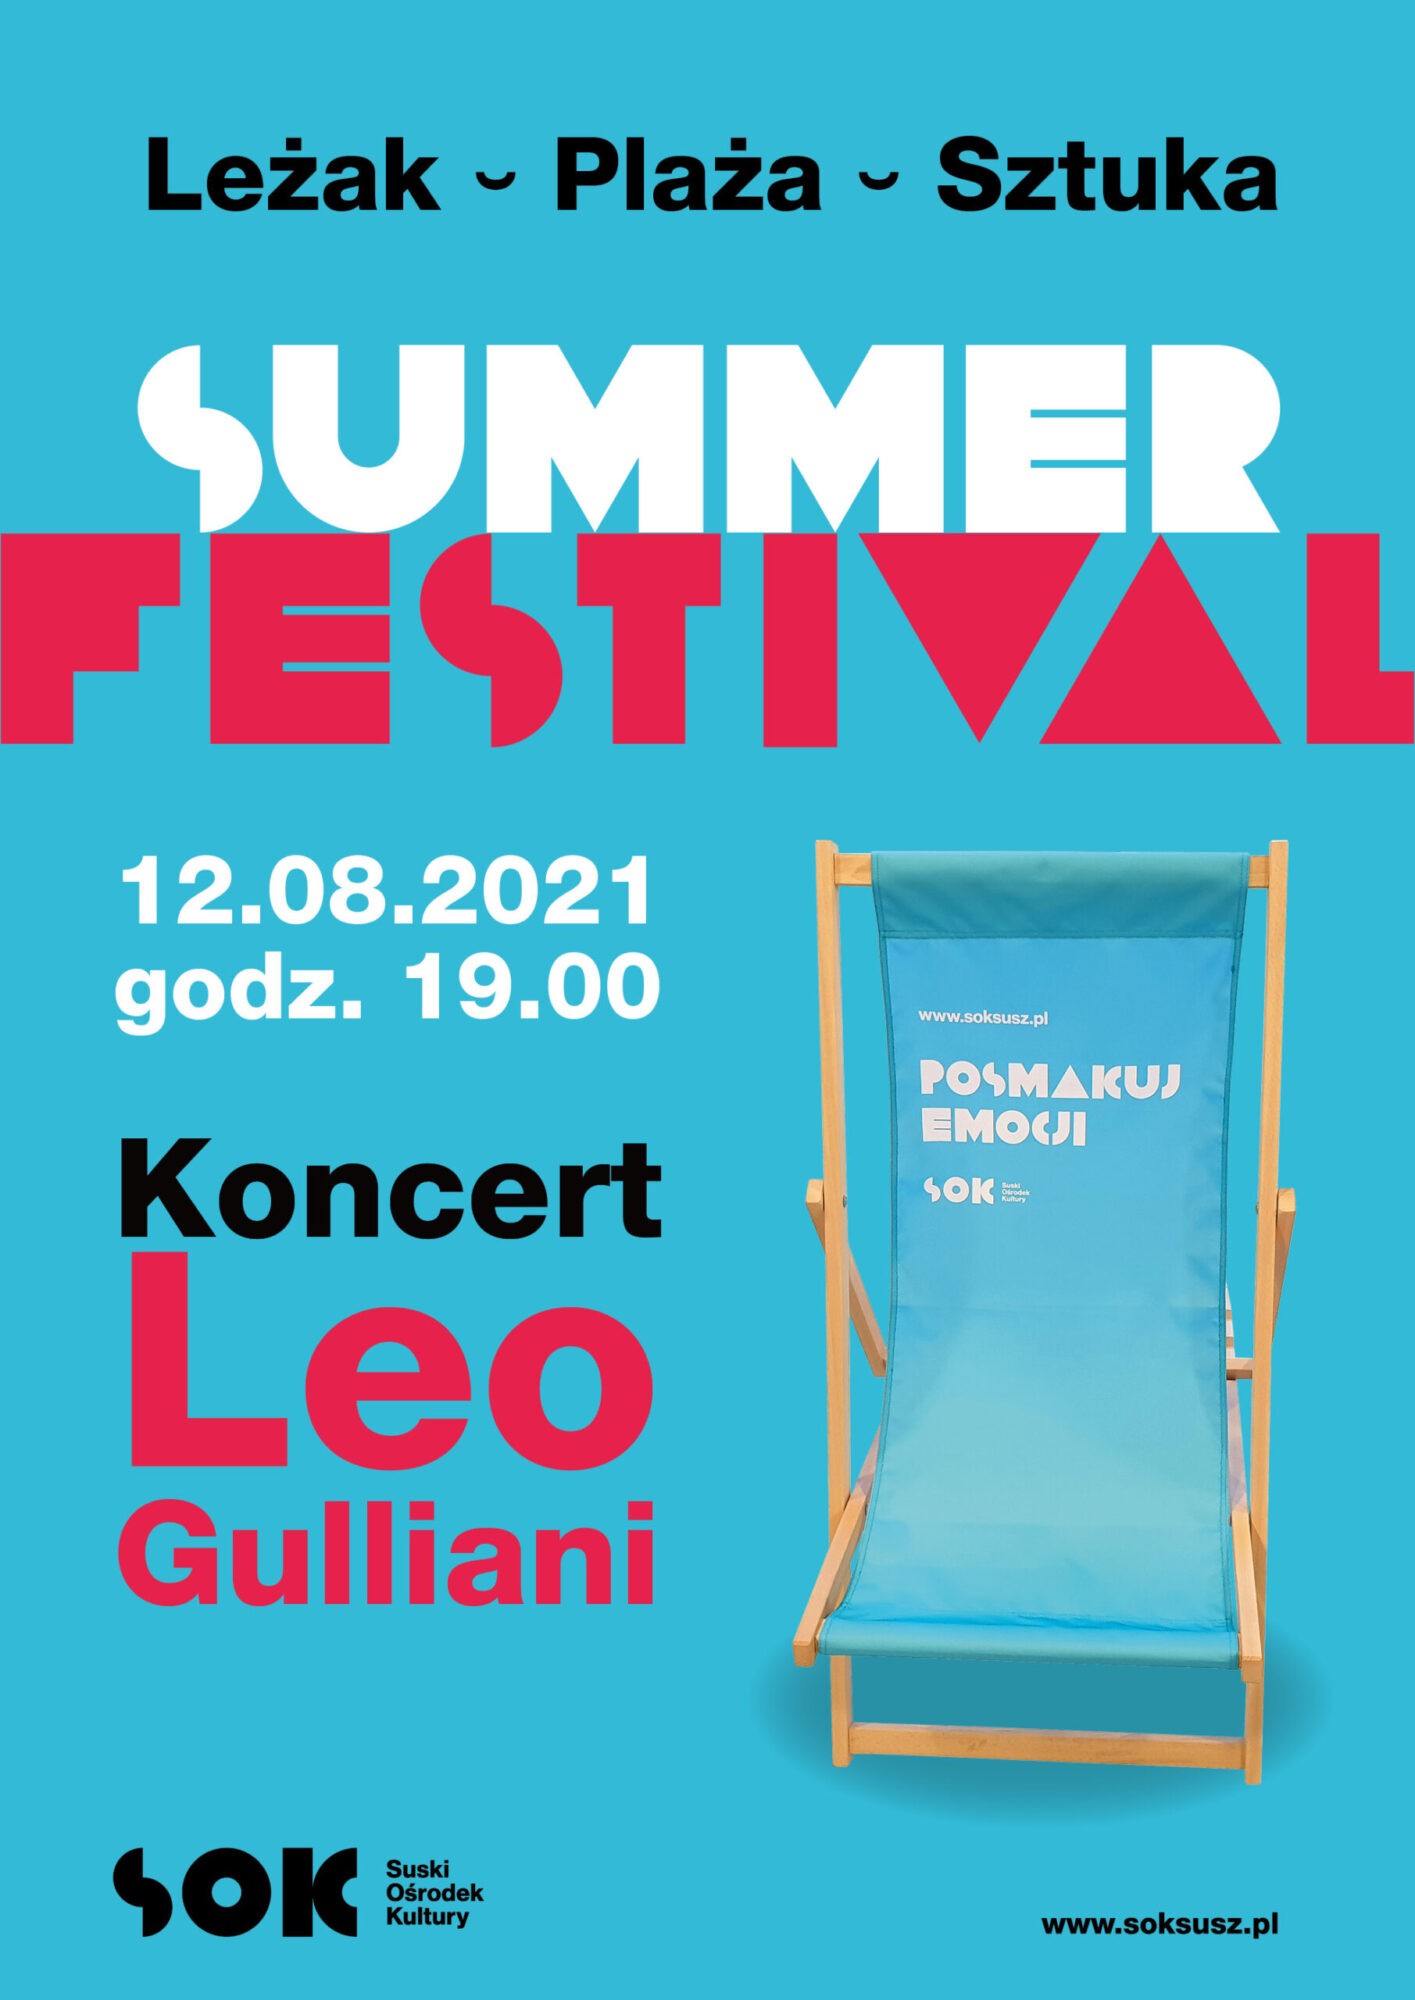 LEO GIULIANI / SUMMER FESTIVAL / 12.08